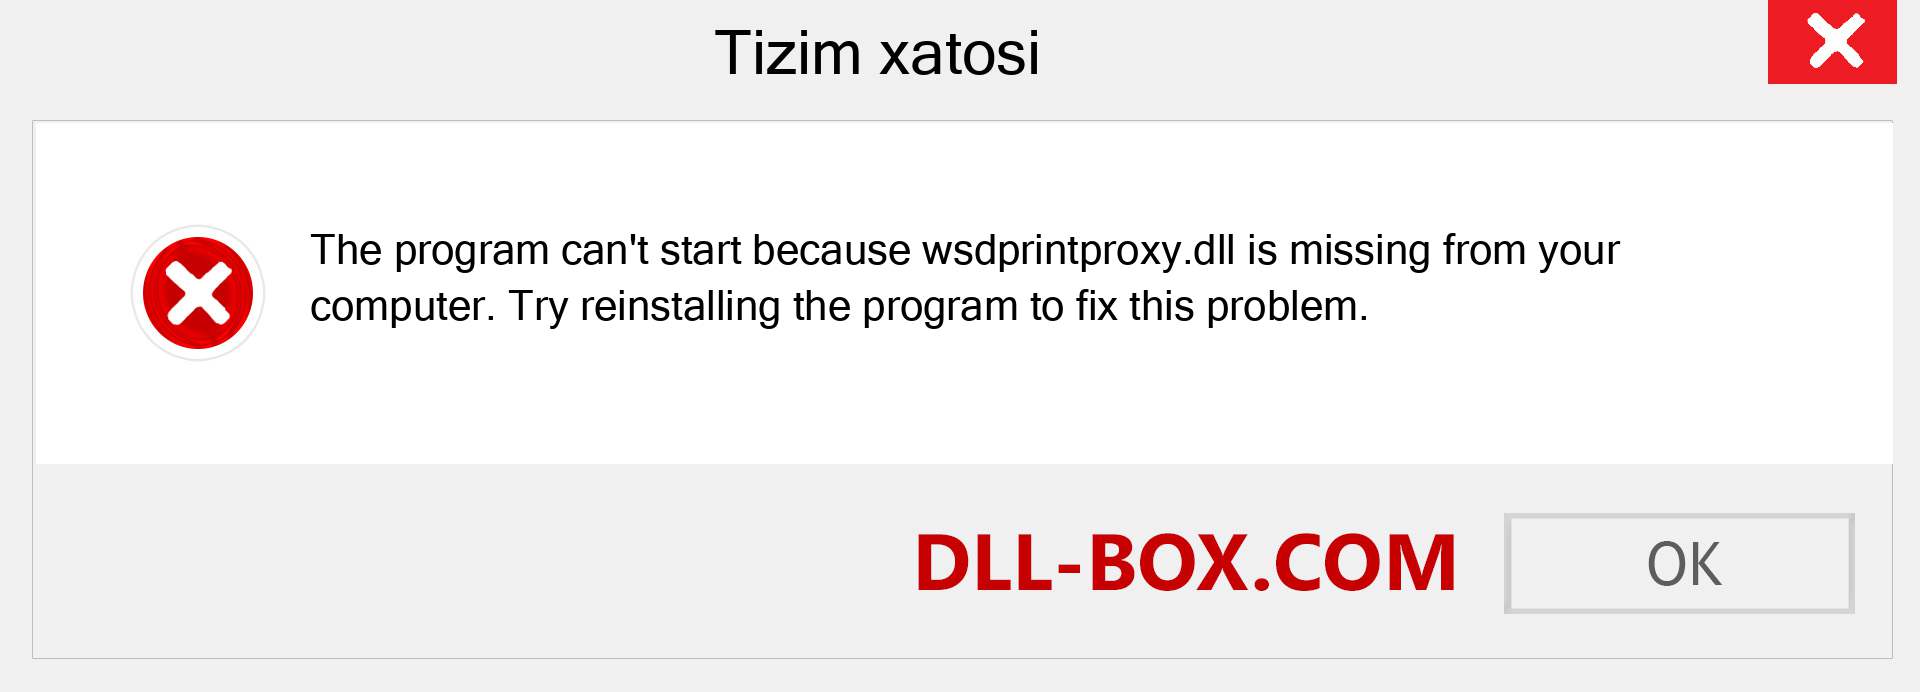 wsdprintproxy.dll fayli yo'qolganmi?. Windows 7, 8, 10 uchun yuklab olish - Windowsda wsdprintproxy dll etishmayotgan xatoni tuzating, rasmlar, rasmlar